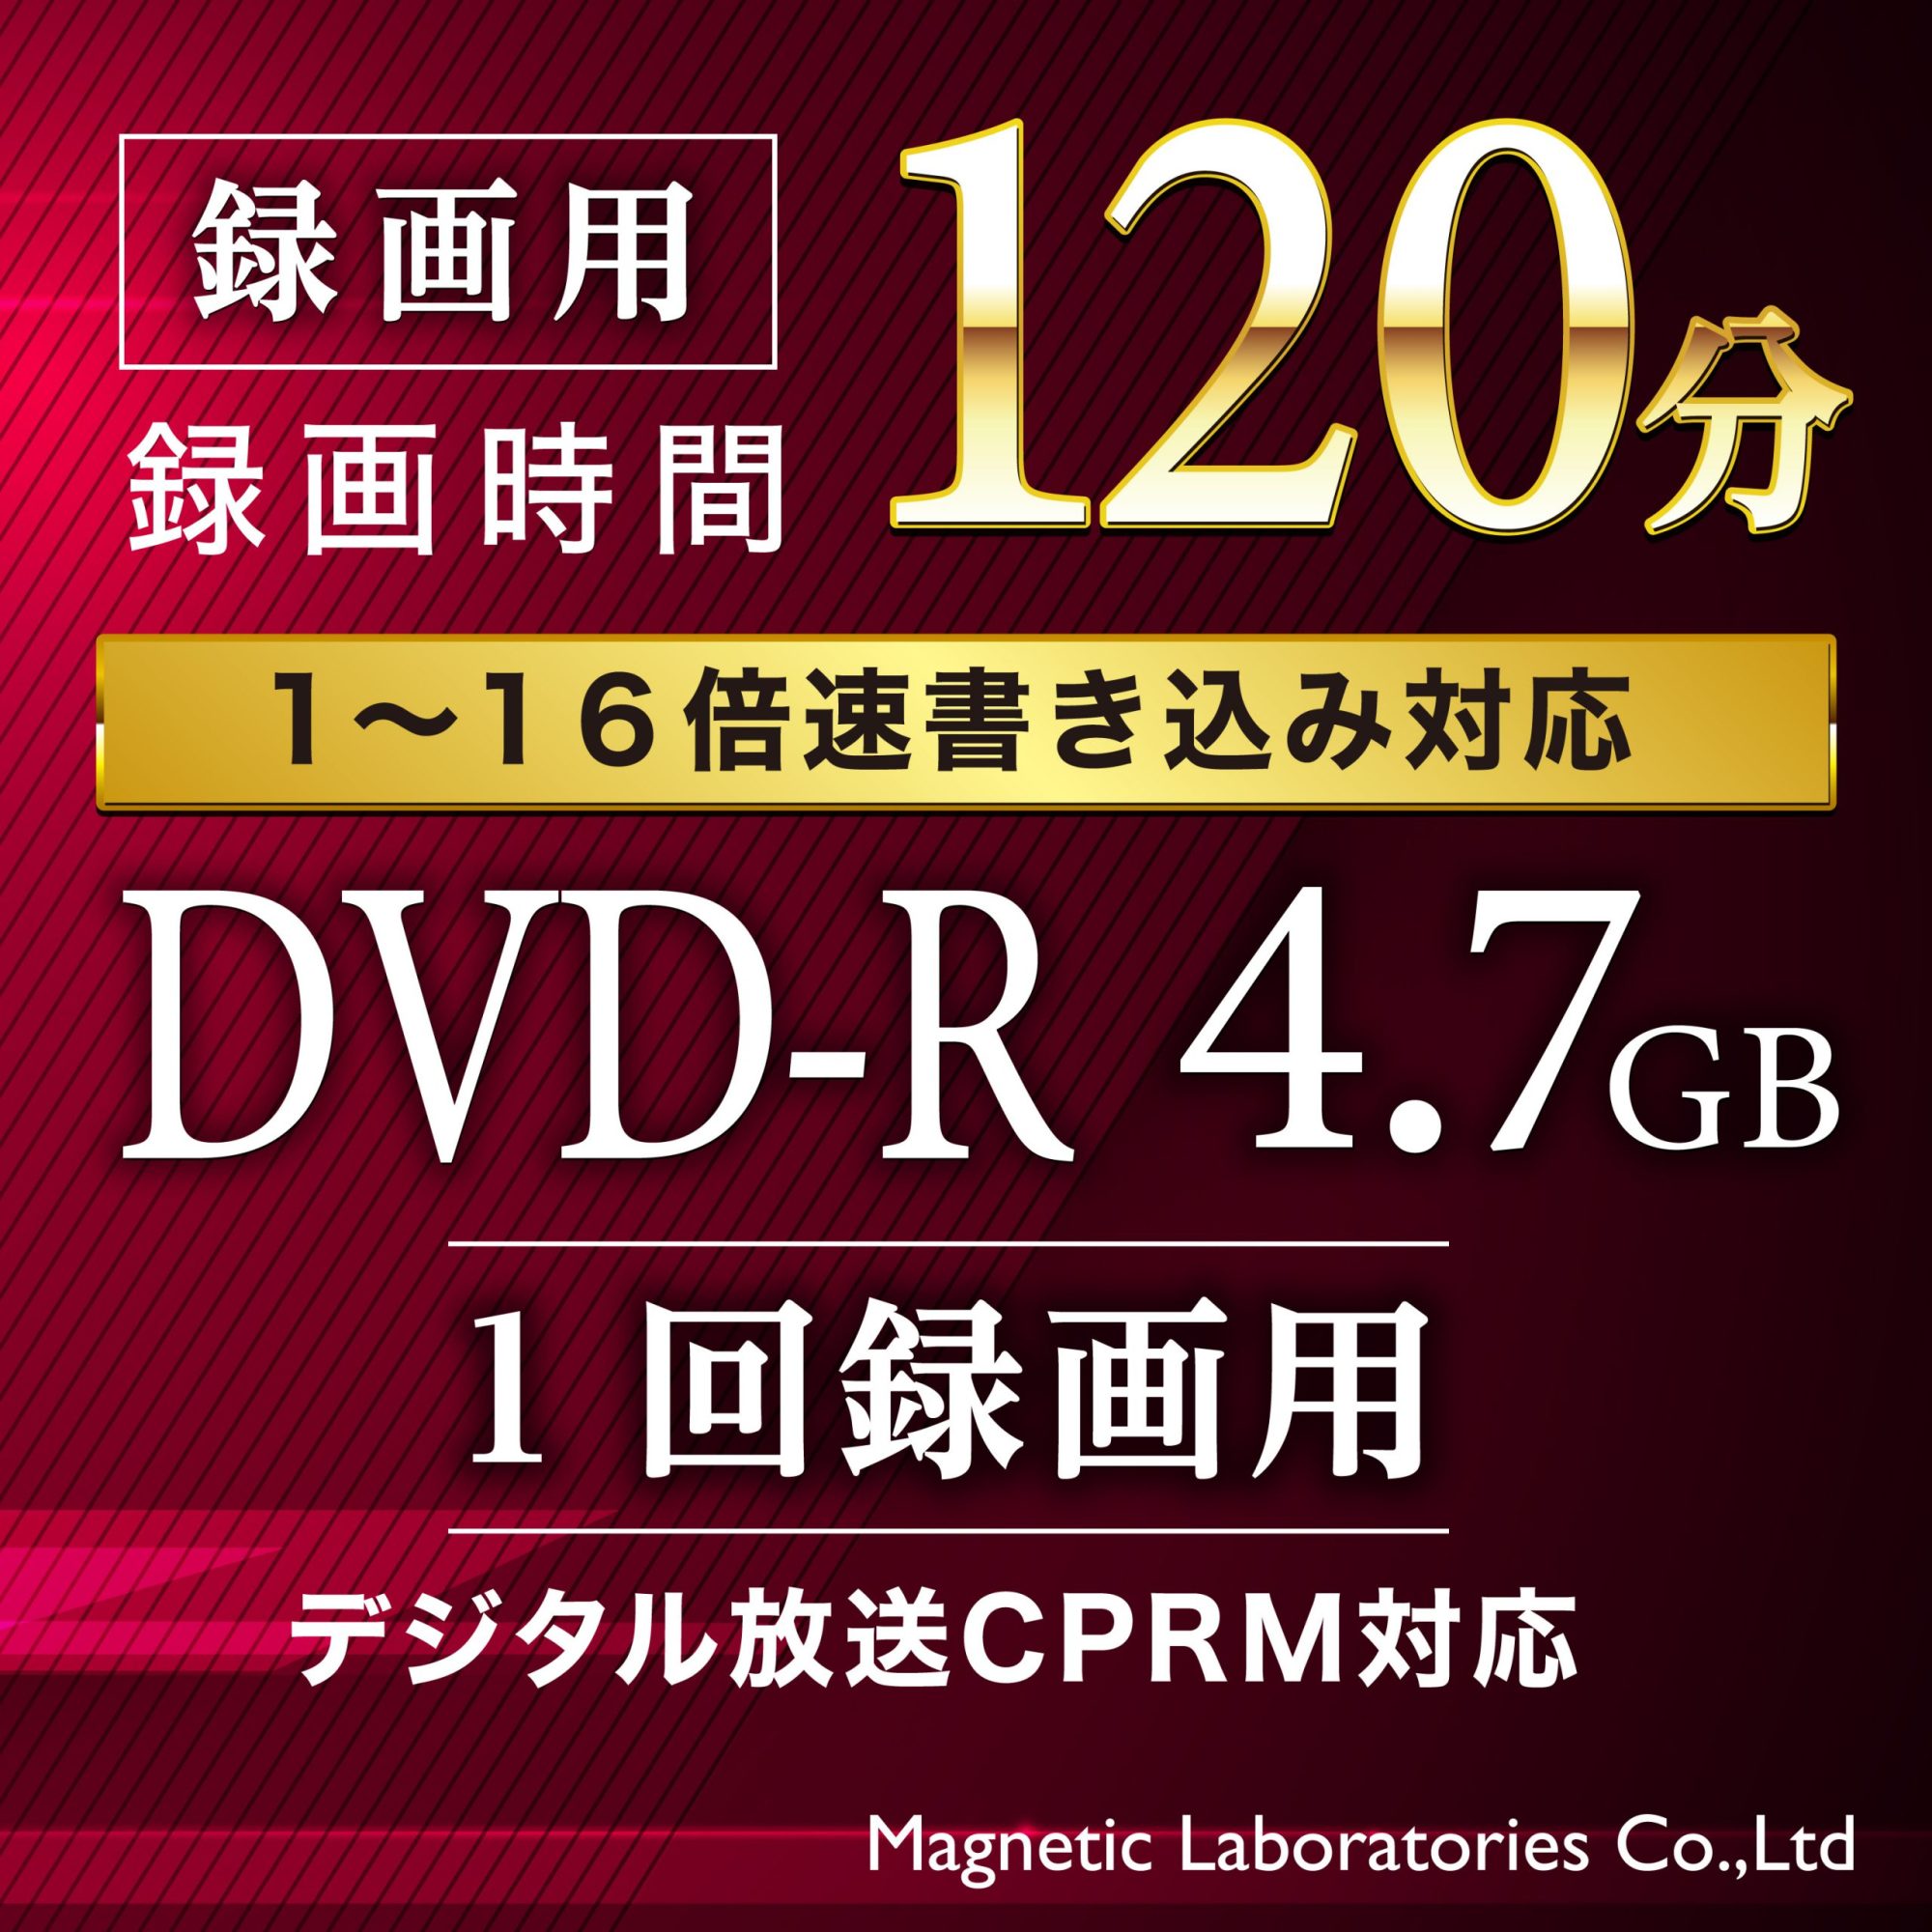 PREMIUM HIDISC DVD-R デジタル放送録画用 (CPRM対応) 16倍速 120分 